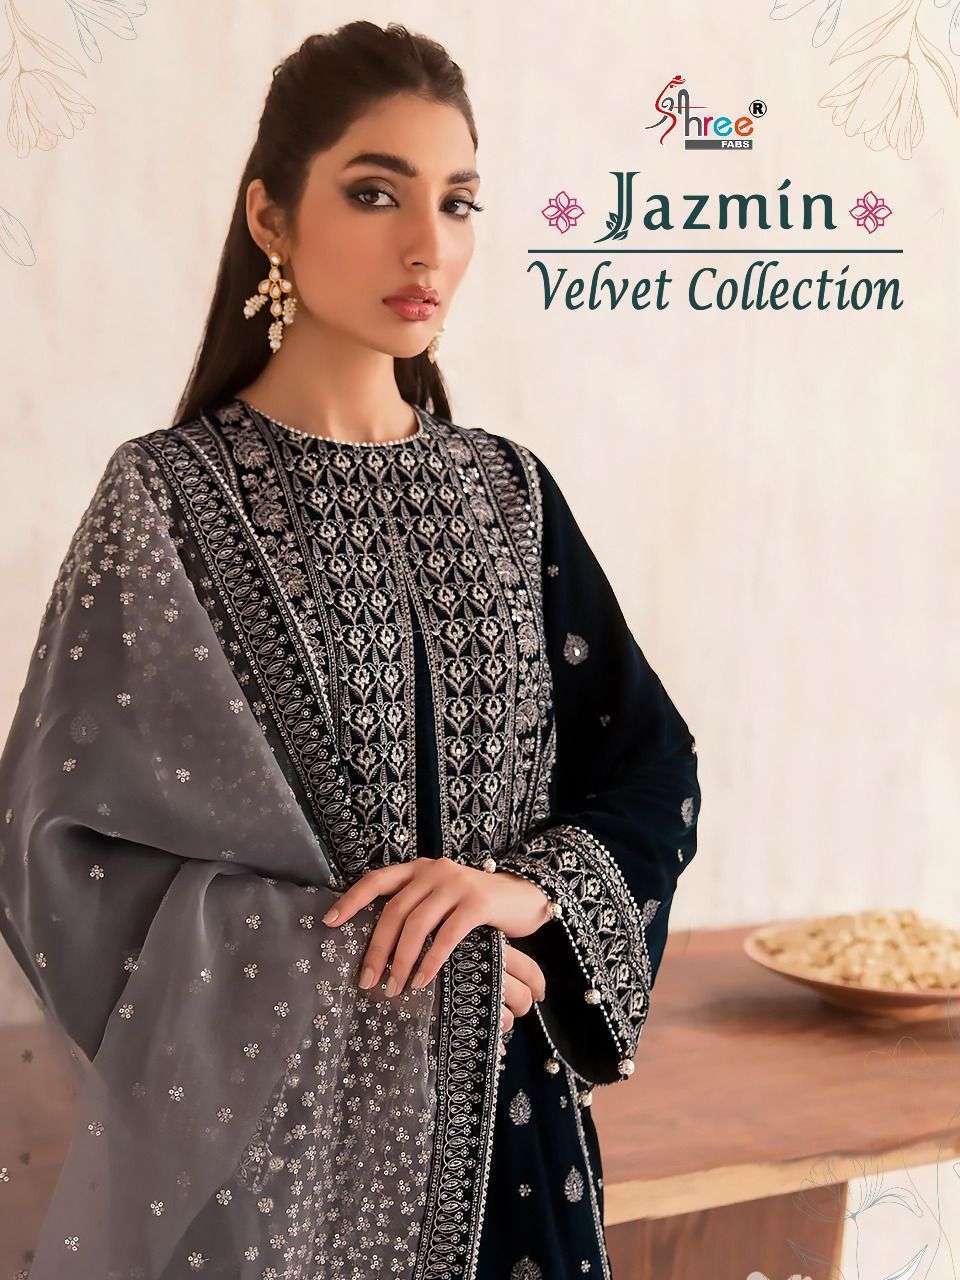 shree fabs jazmin velvet collection series 2452-2455 9000 velvet suit